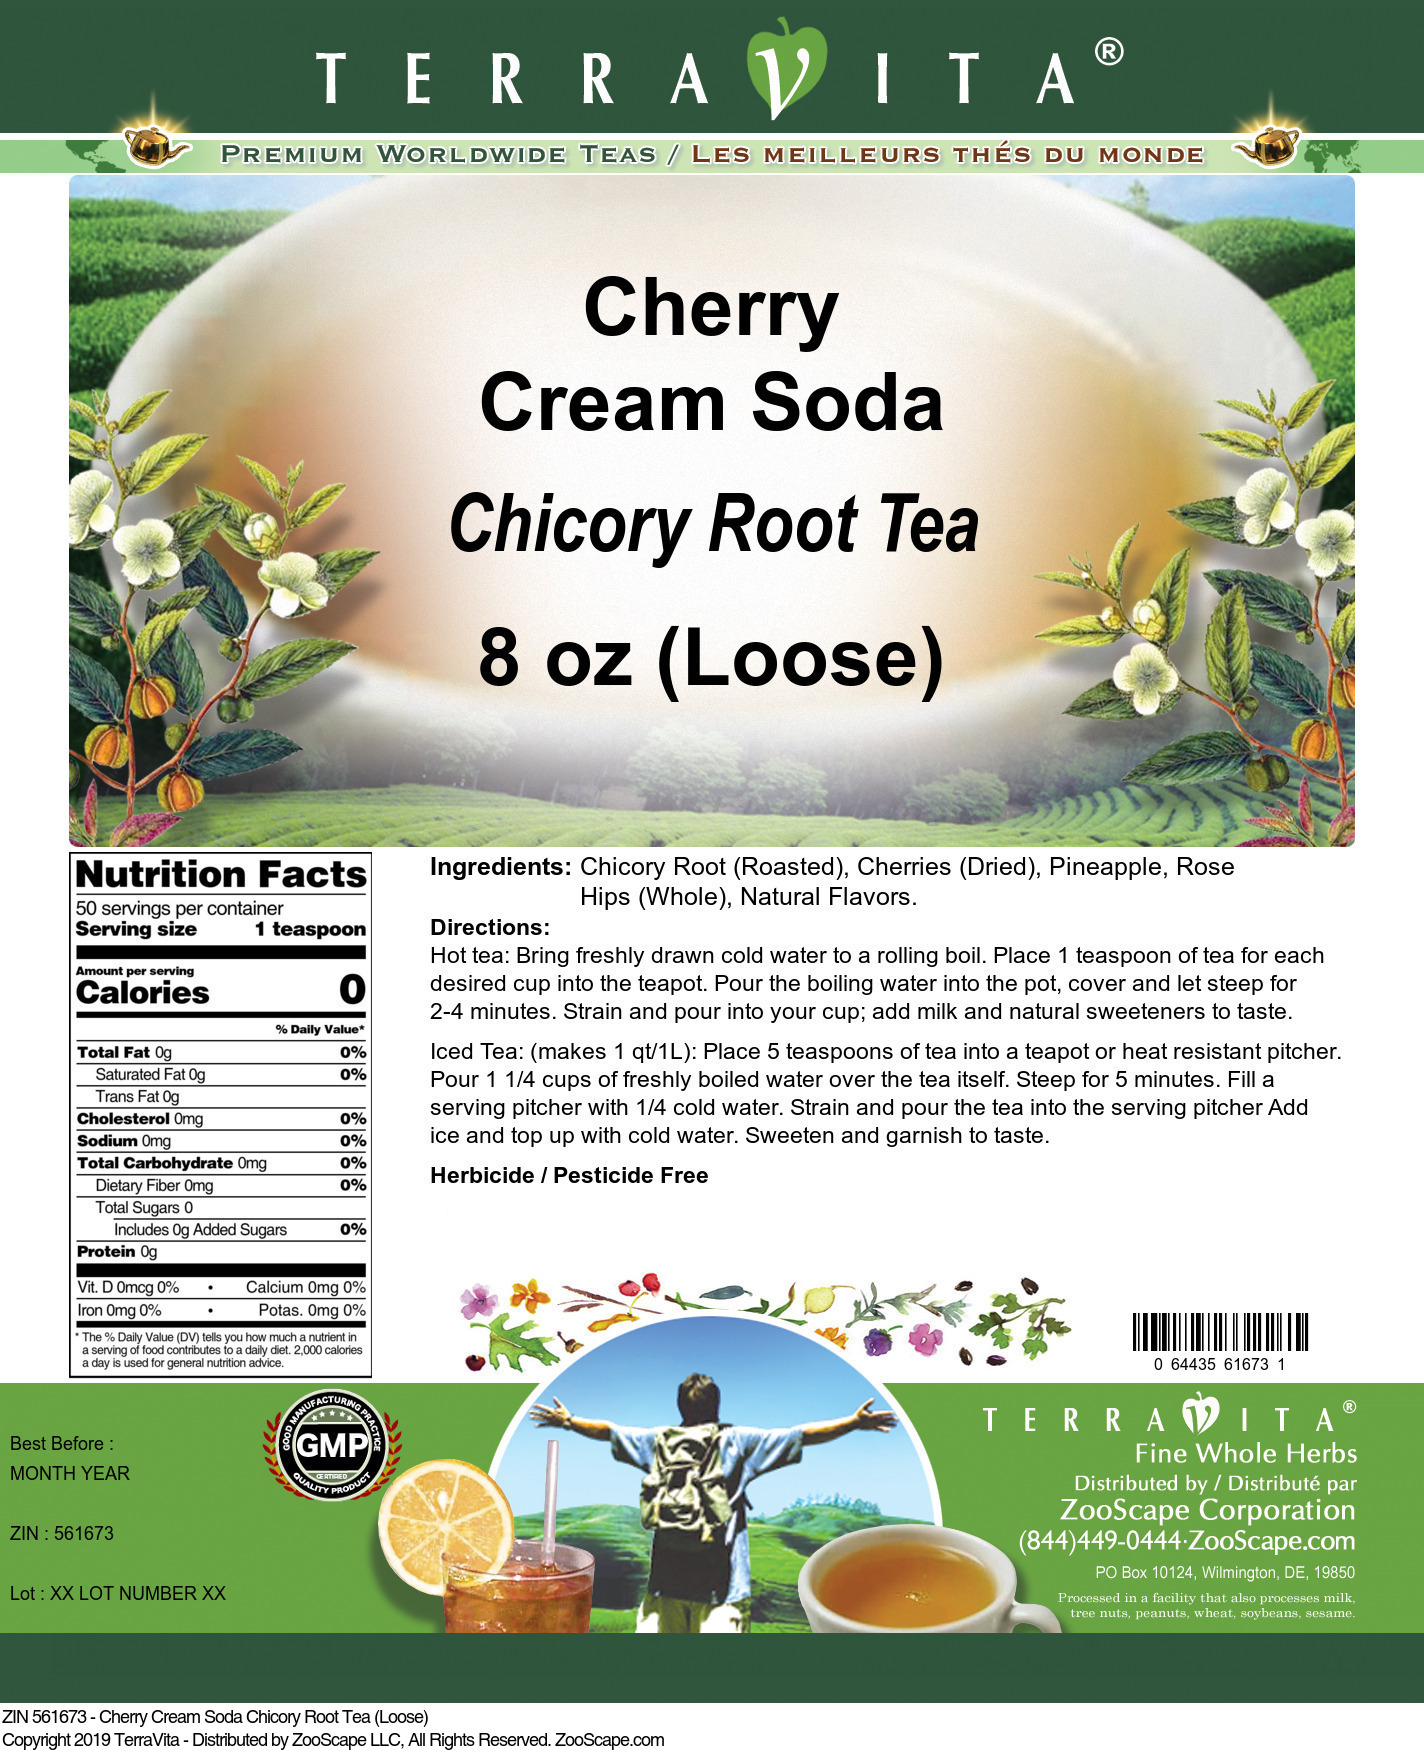 Cherry Cream Soda Chicory Root Tea (Loose) - Label